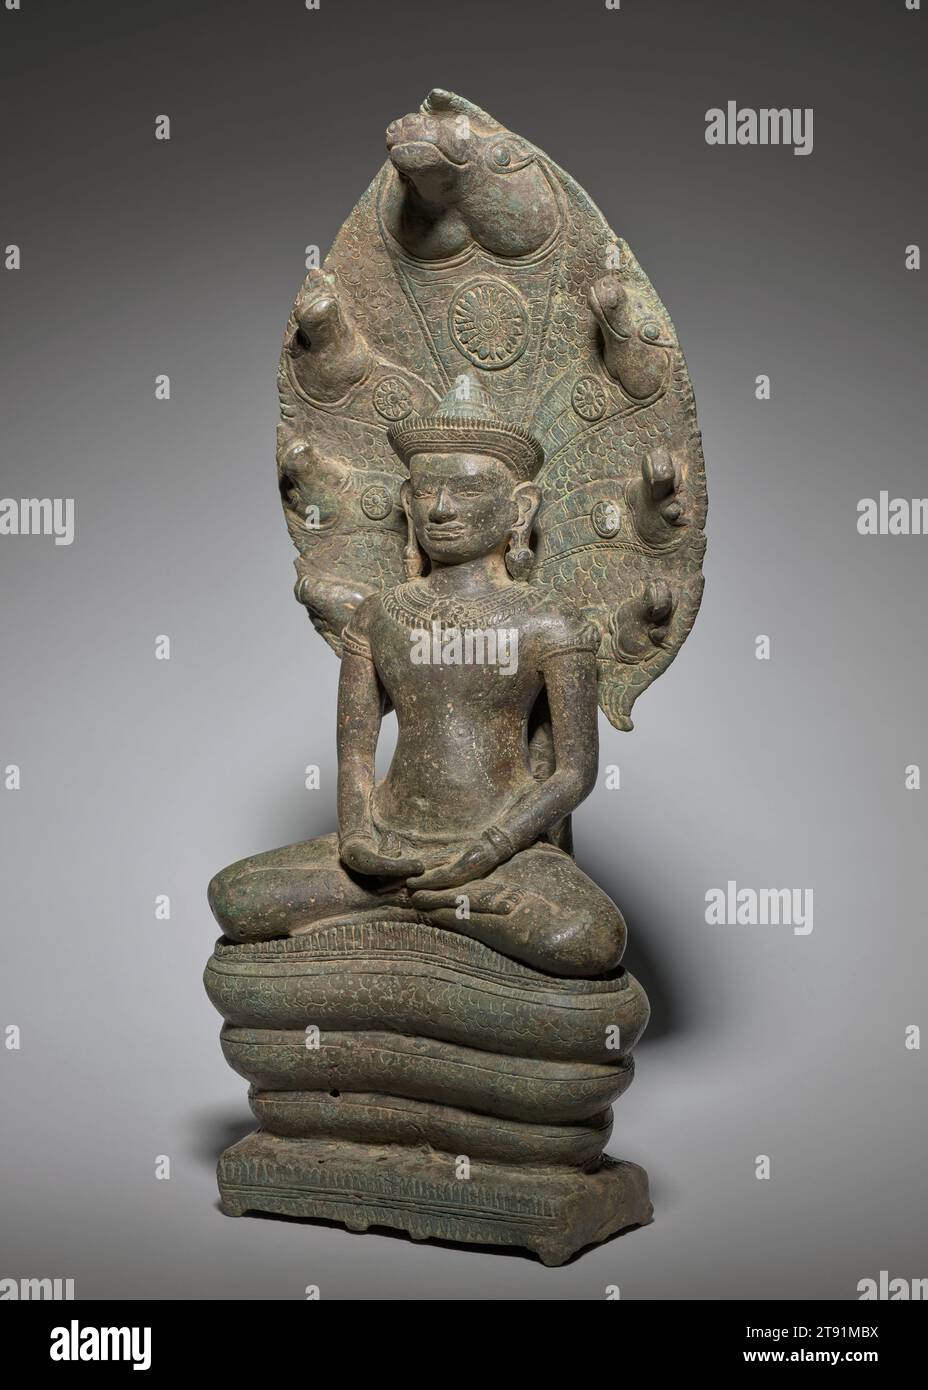 Naga-thronender Buddha, 12.-13. Jahrhundert, 16 3/8 x 6 5/8 x 3 13/16 Zoll (41,59 x 16,83 x 9,68 cm), Bronze, Kambodscha, 12.-13. Jahrhundert, Siddhartha Gautama, der Buddha wurde, erlangte Erleuchtung, nachdem er sieben Wochen lang unter einem alten Bodhi-Feigenbaum meditierte. Während dieser Zeit ertrug er eine Woche feuchten Regens, geschützt durch die ausbreitende Kapuze des Naga-Königs Mucalinda. Zusammen mit dem thailändischen „Walking Buddha“ gewann diese Darstellung des Buddha, der von Mucalinda geschützt wurde, in Südostasien eine besondere Bedeutung. Das Bild war unter dem Khmer-König Jayavarman VII. Populär Stockfoto